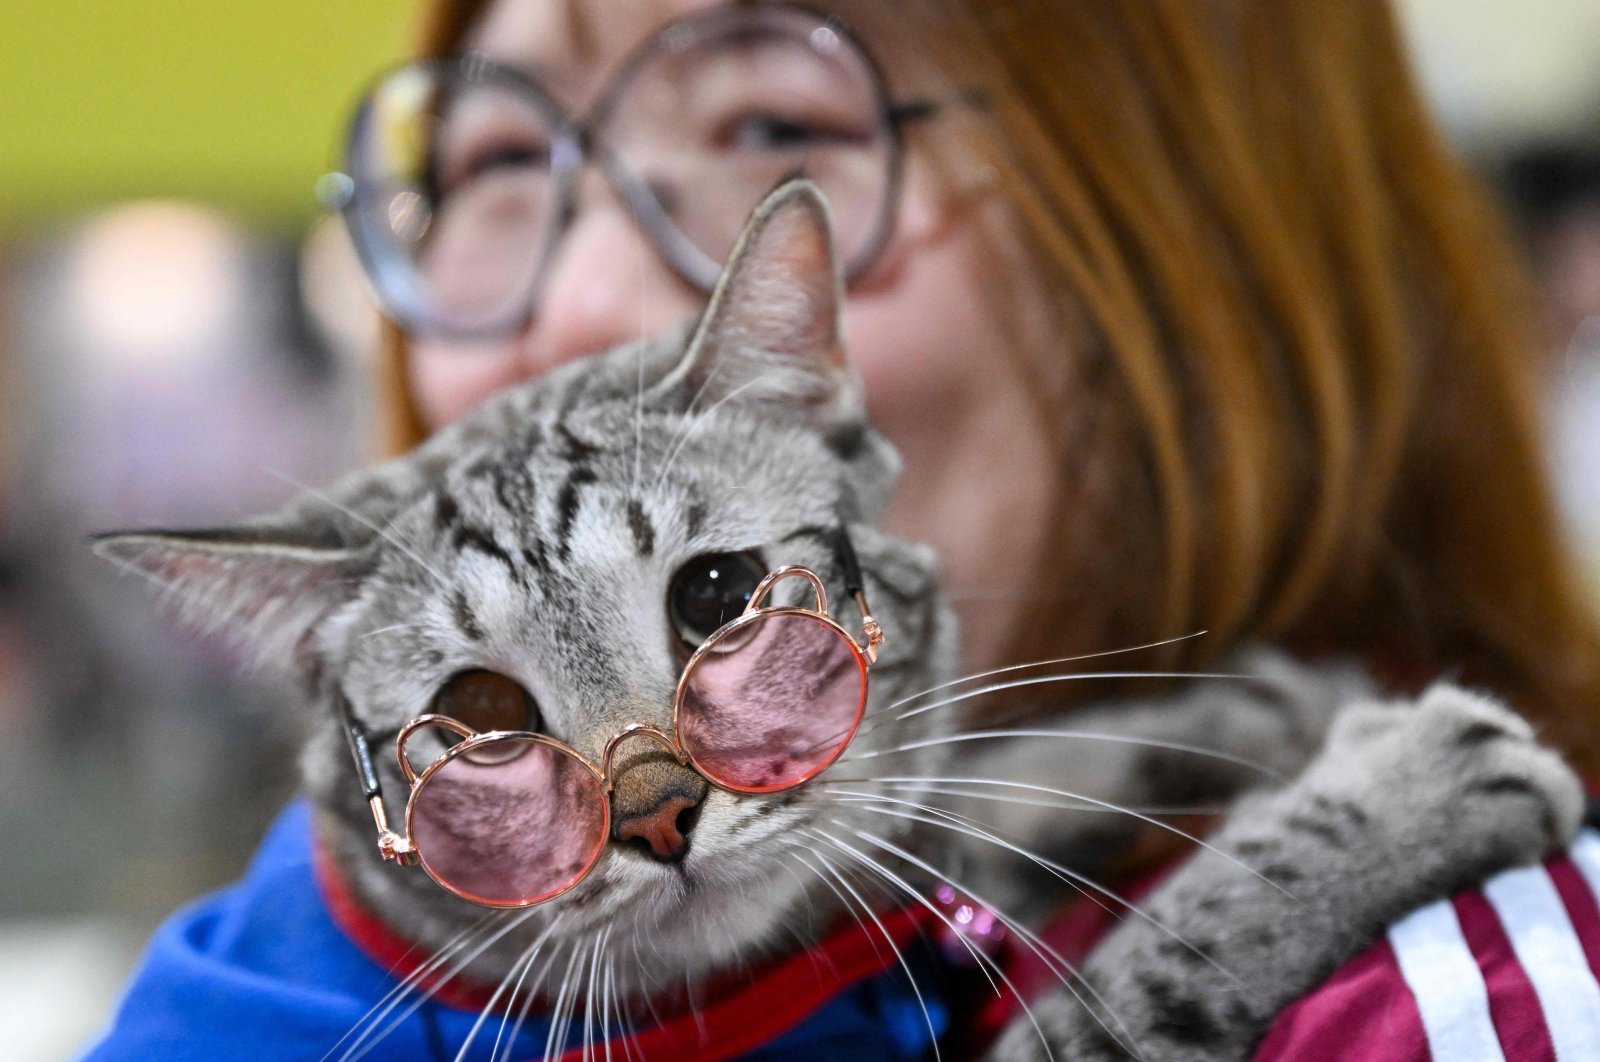 Aplikasi Jepang mencoba memberi tahu manusia saat kucing mereka menderita sakit